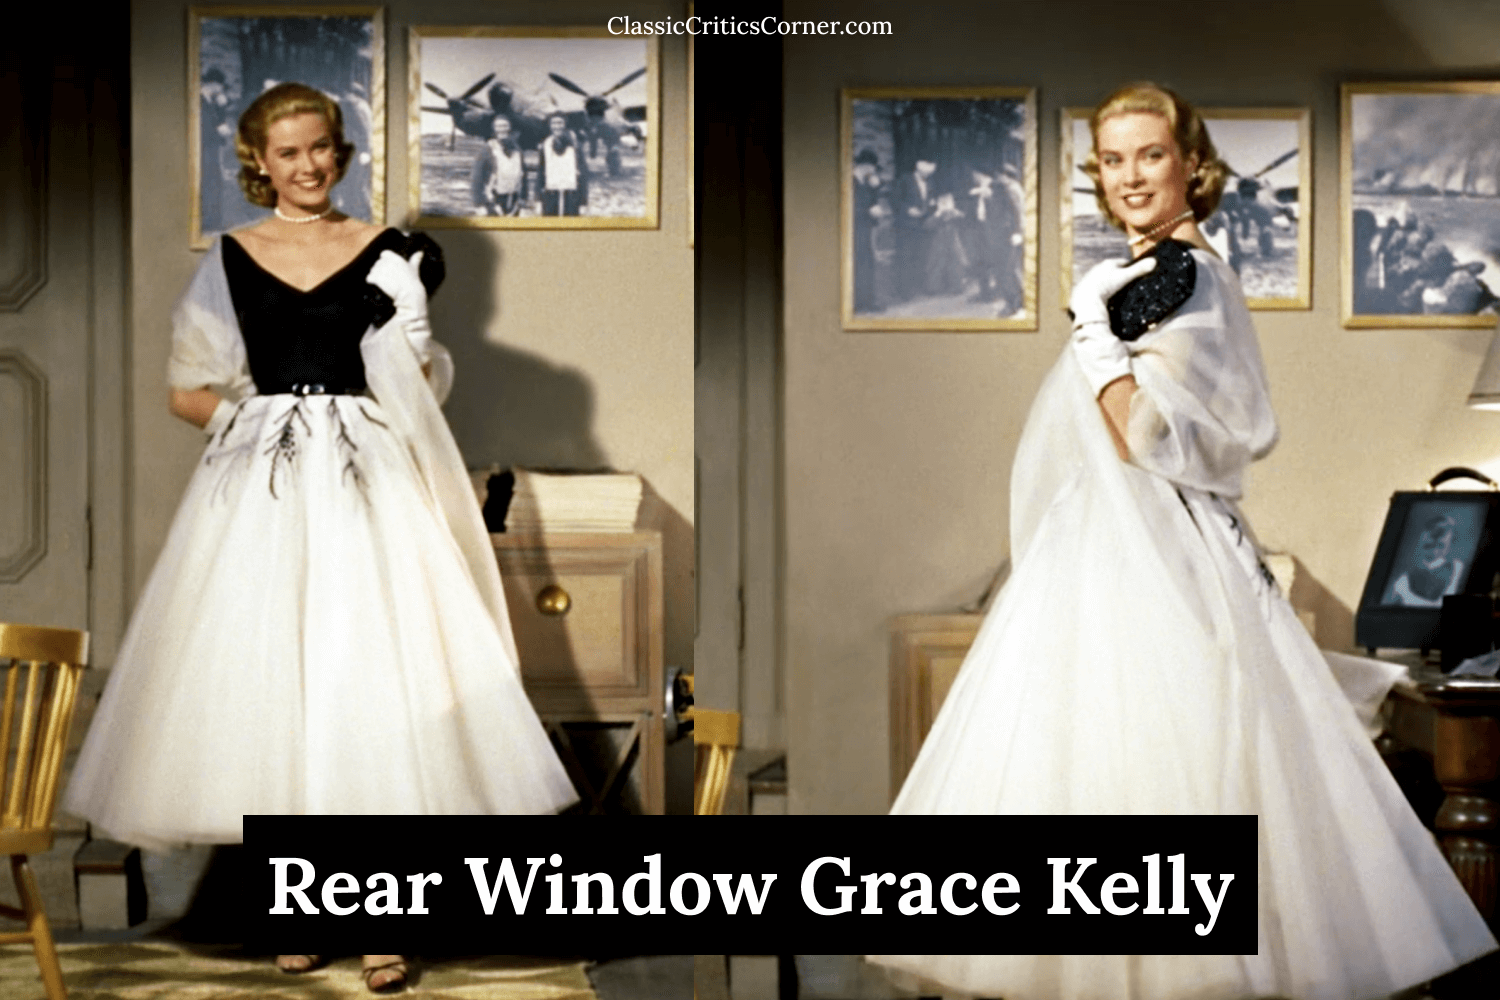 grace kelly rear window nightgown